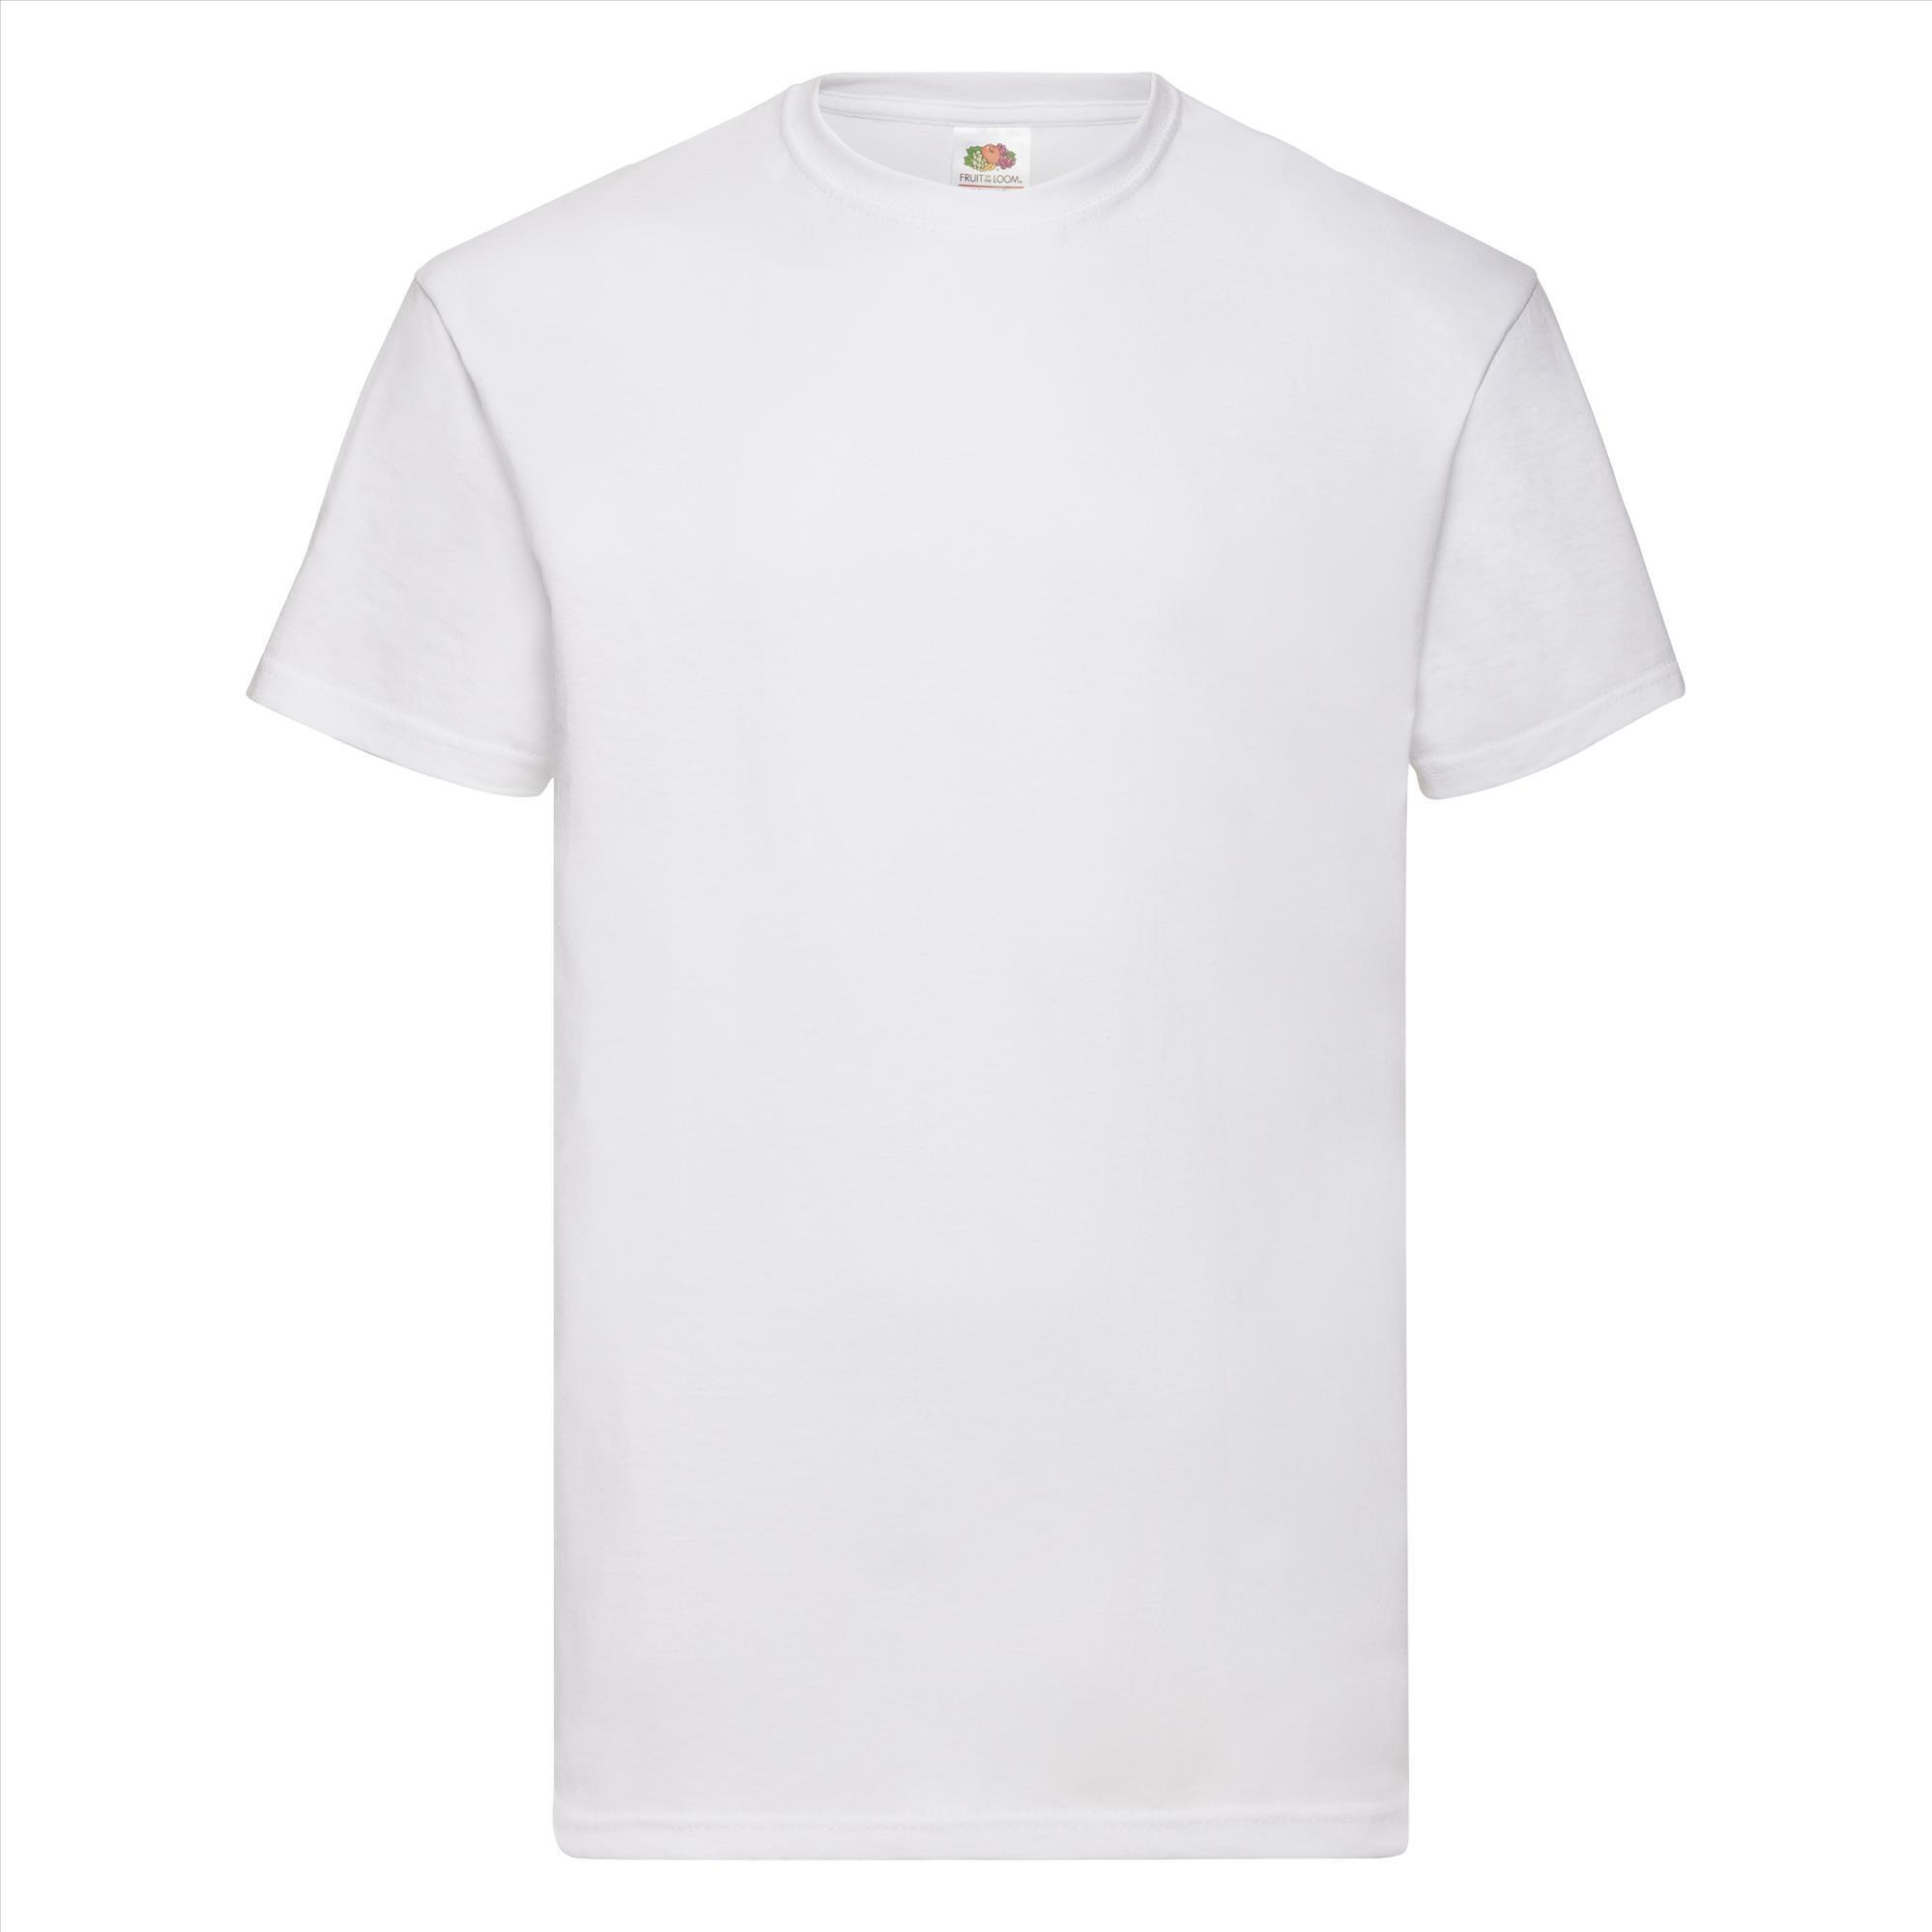 T-shirt voor mannen wit personaliseren T-shirt bedrukken